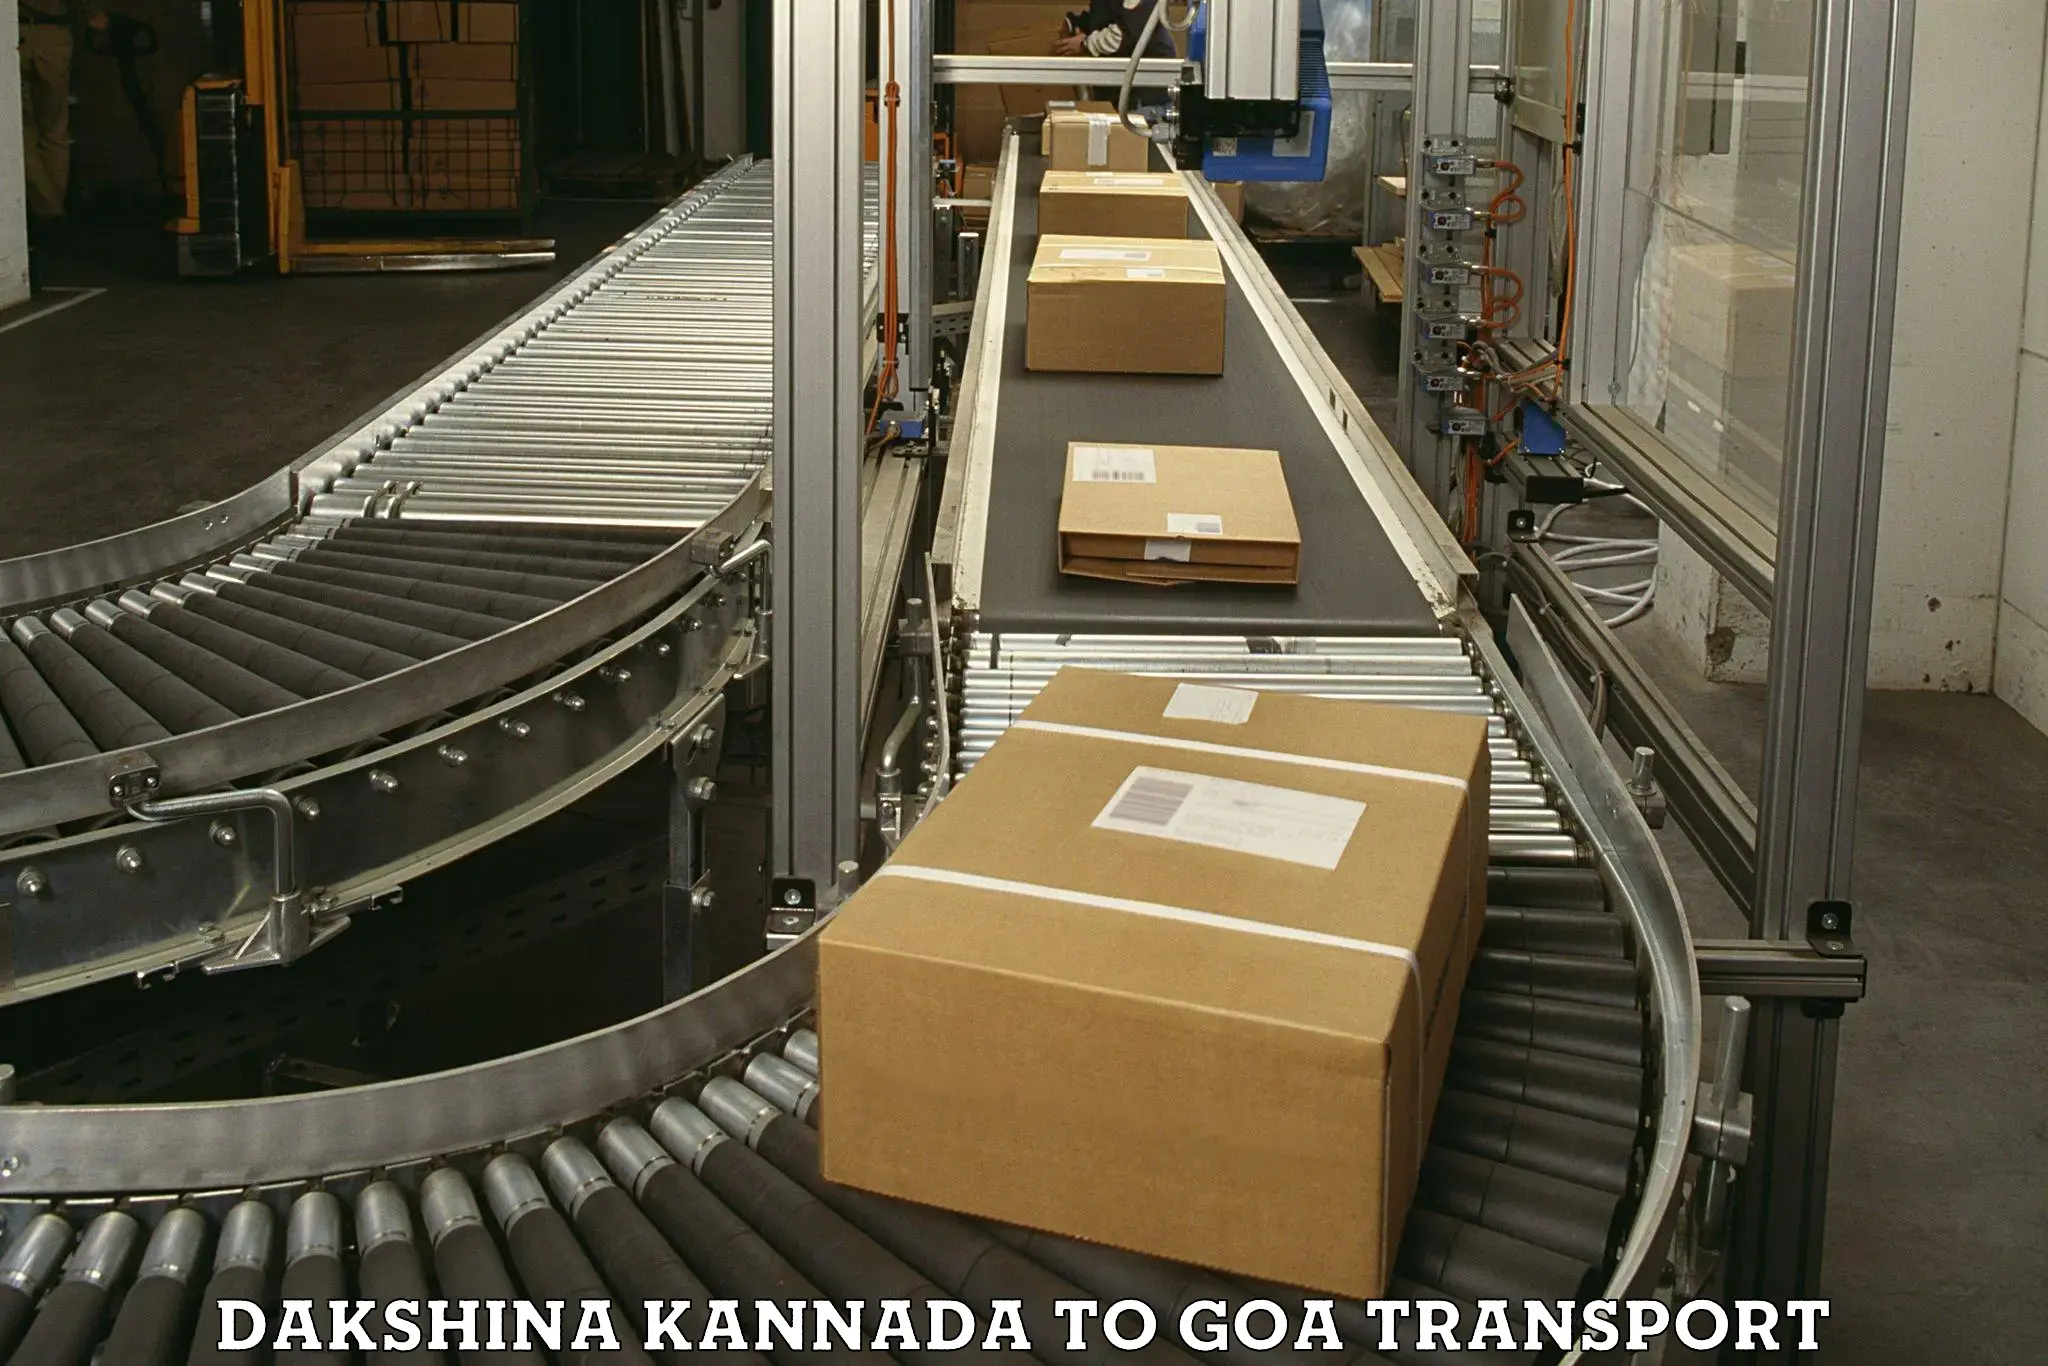 Container transport service Dakshina Kannada to IIT Goa